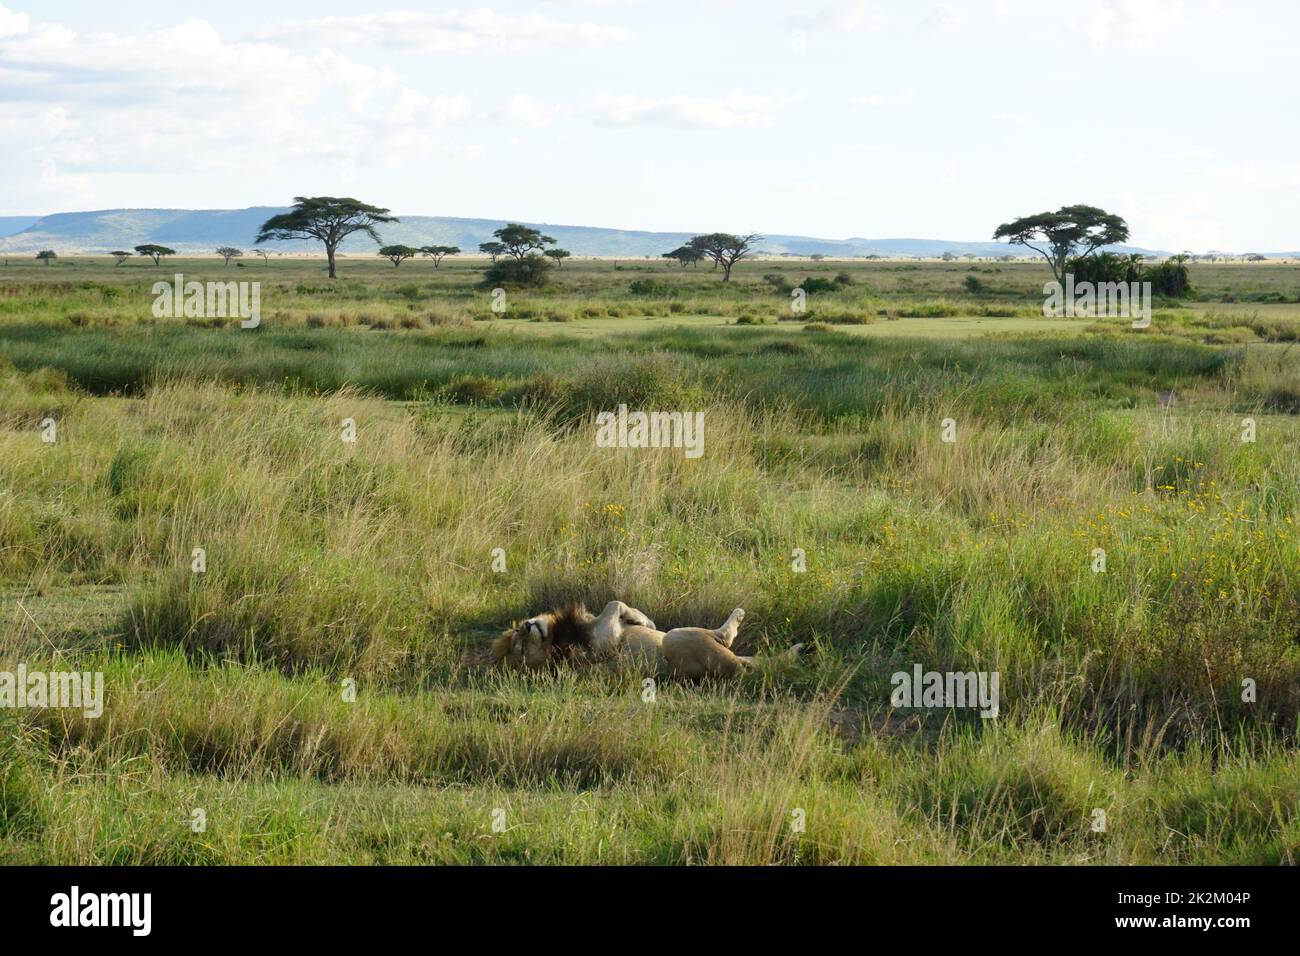 León masculino durmiendo y recuperándose después de la caza en el Serengeti Foto de stock